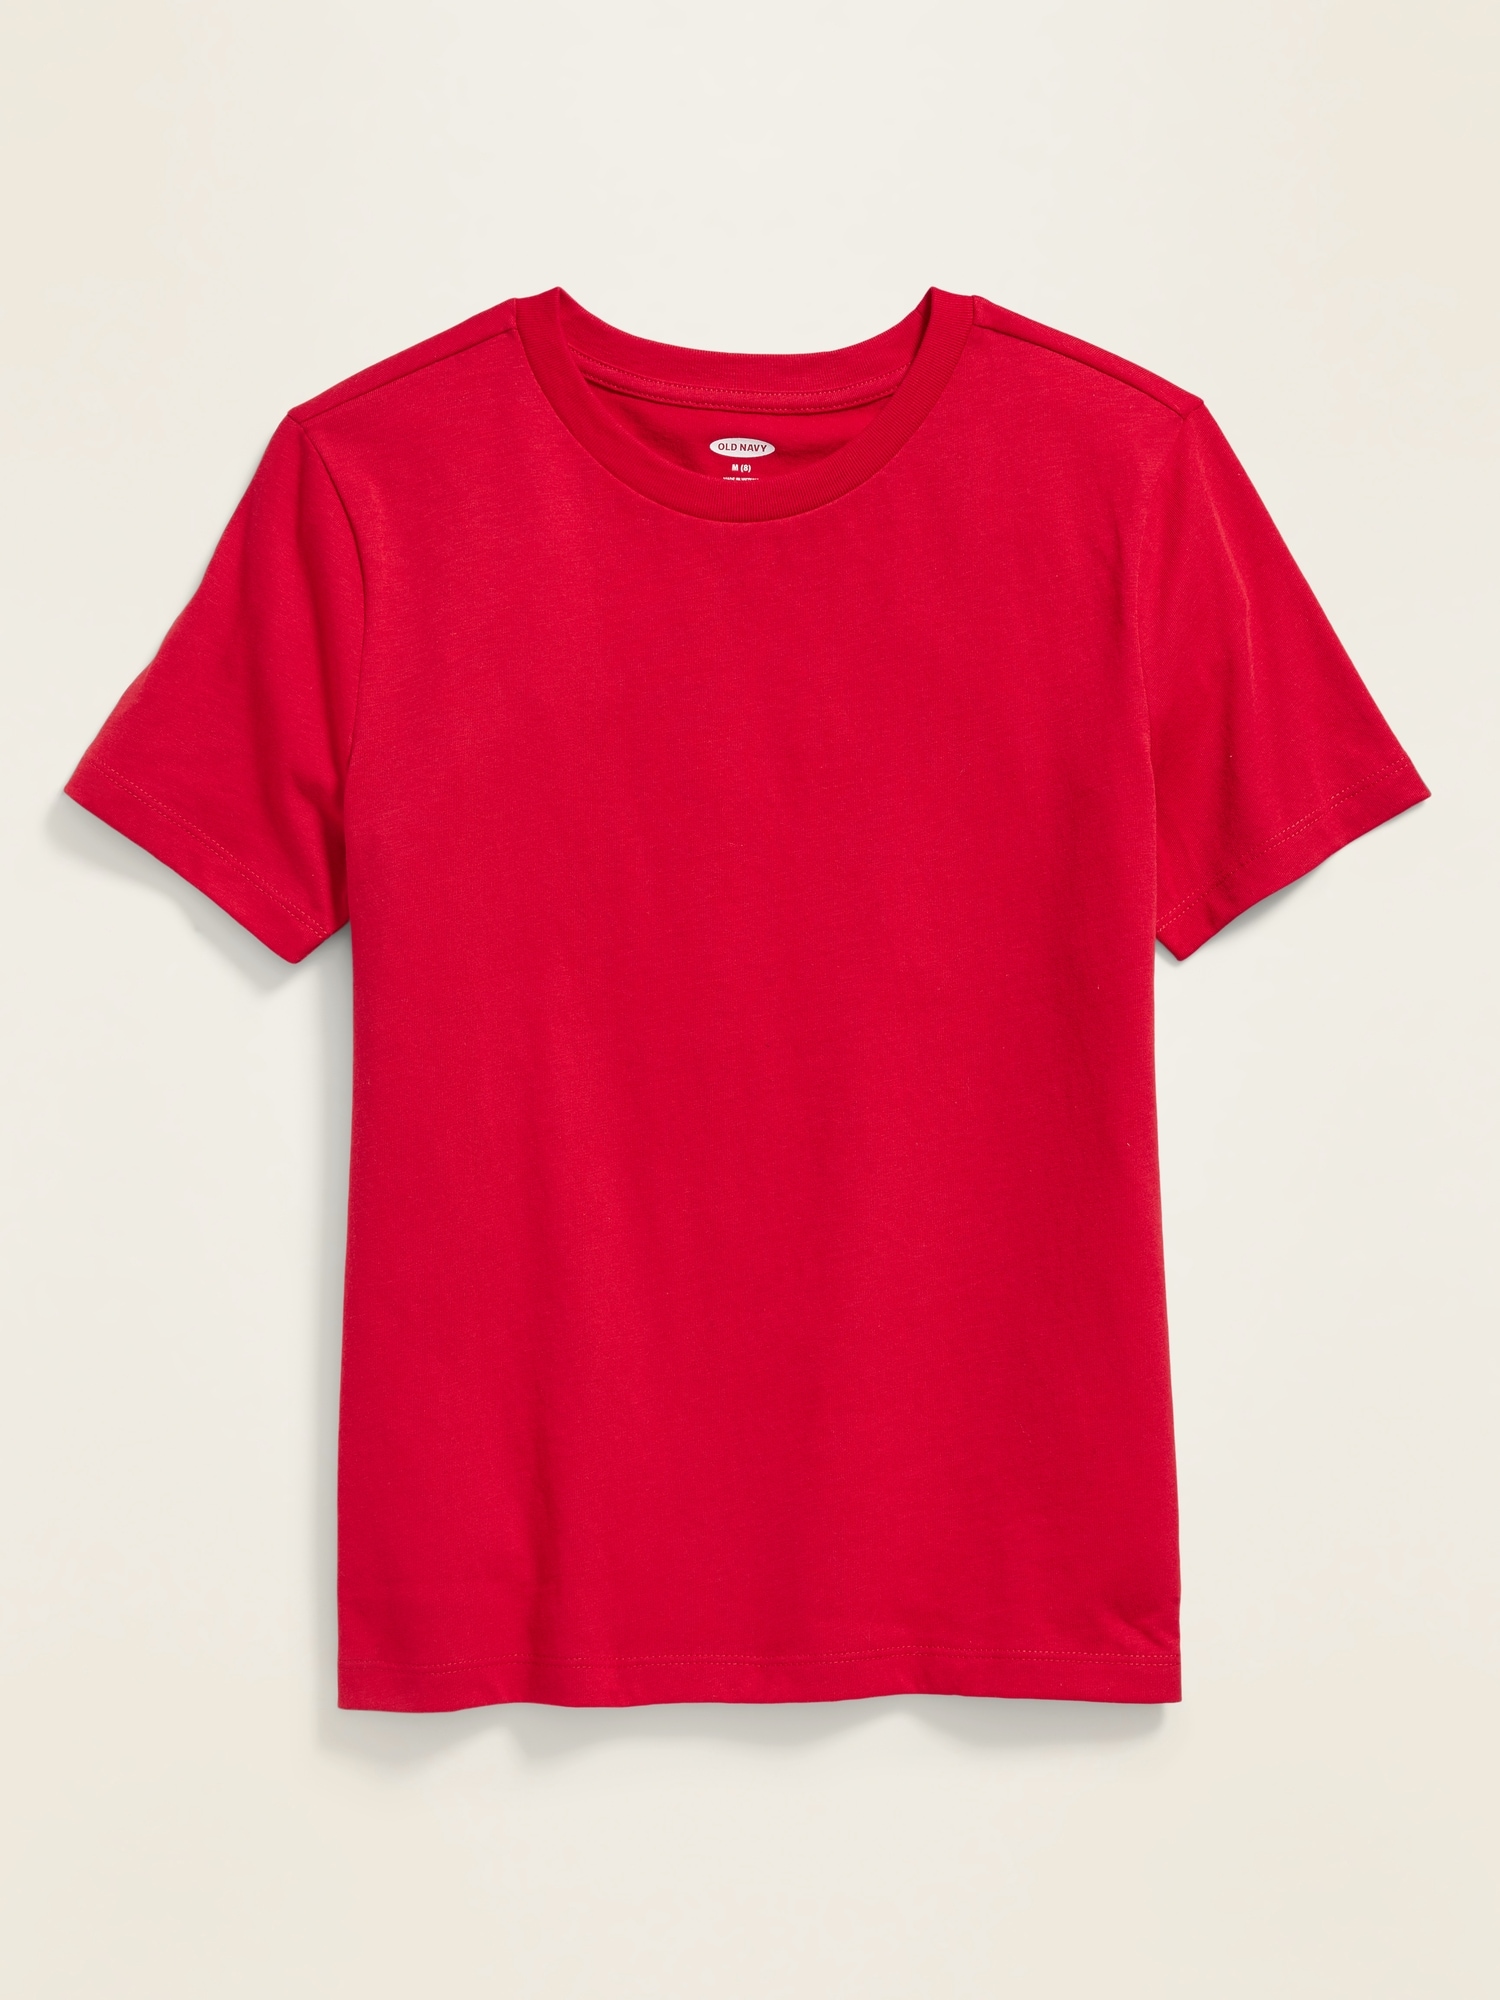 red tshirt for boys